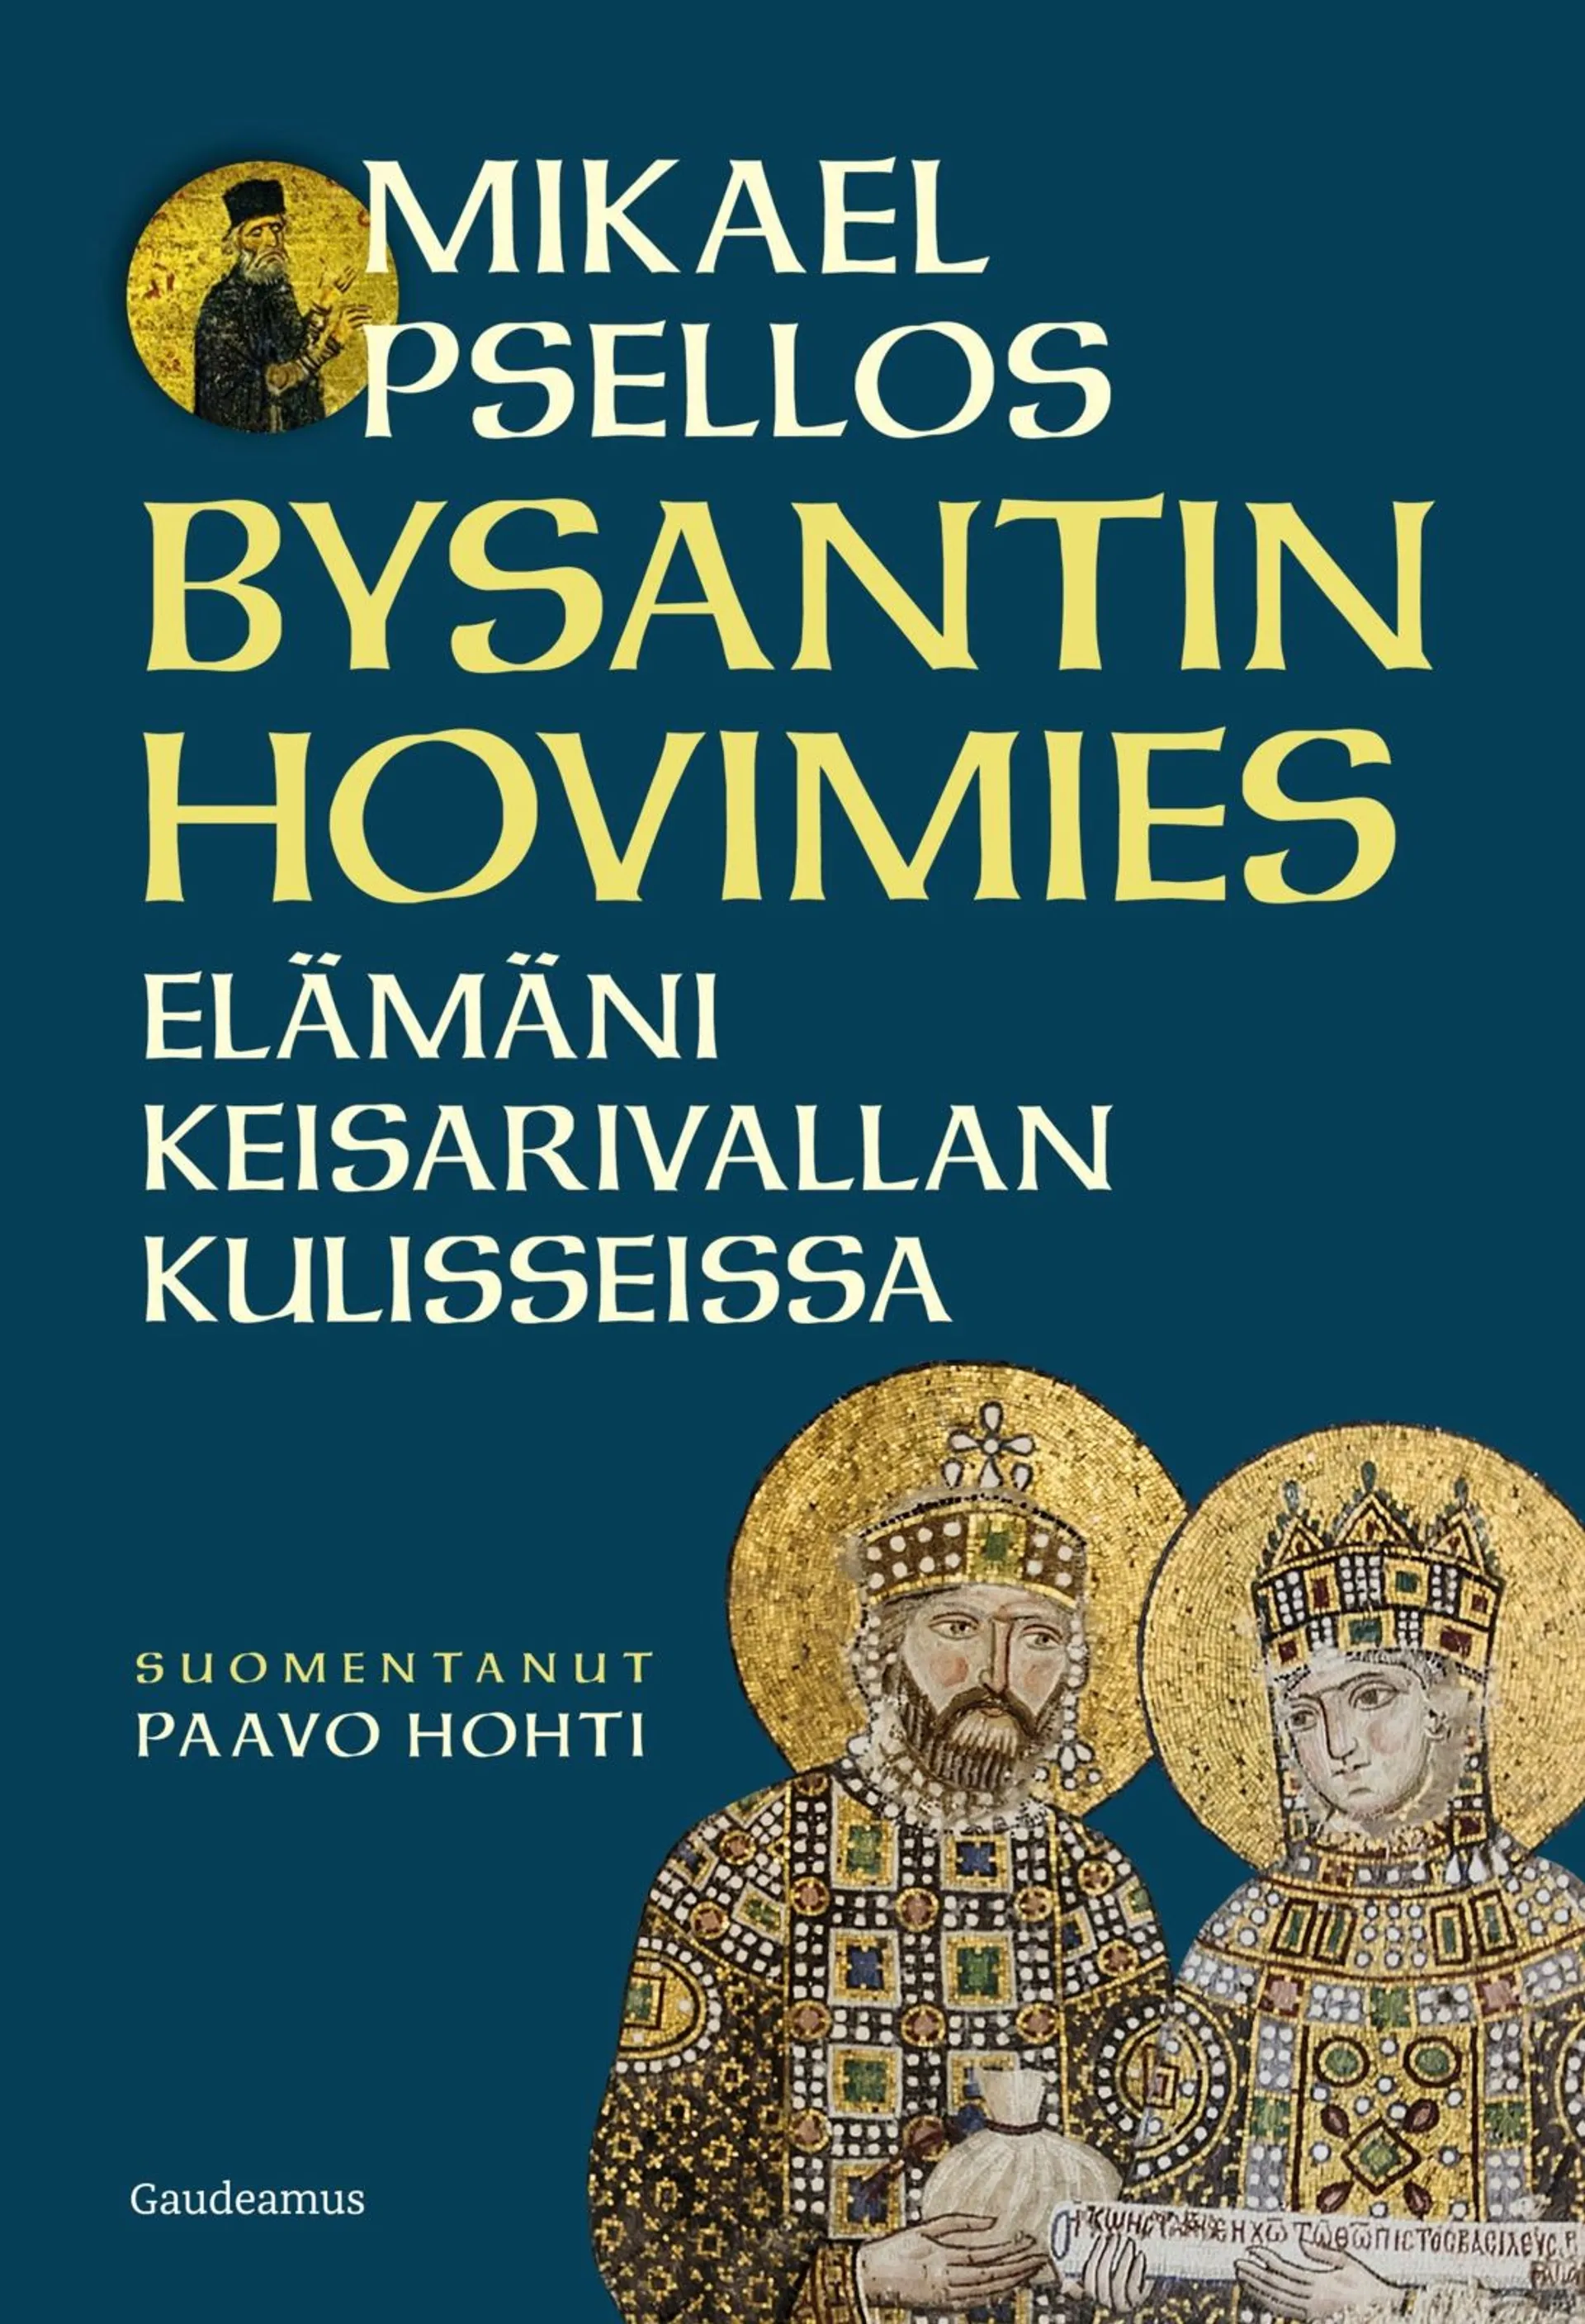 Psellos, Bysantin hovimies - Elämäni keisarivallan kulisseissa